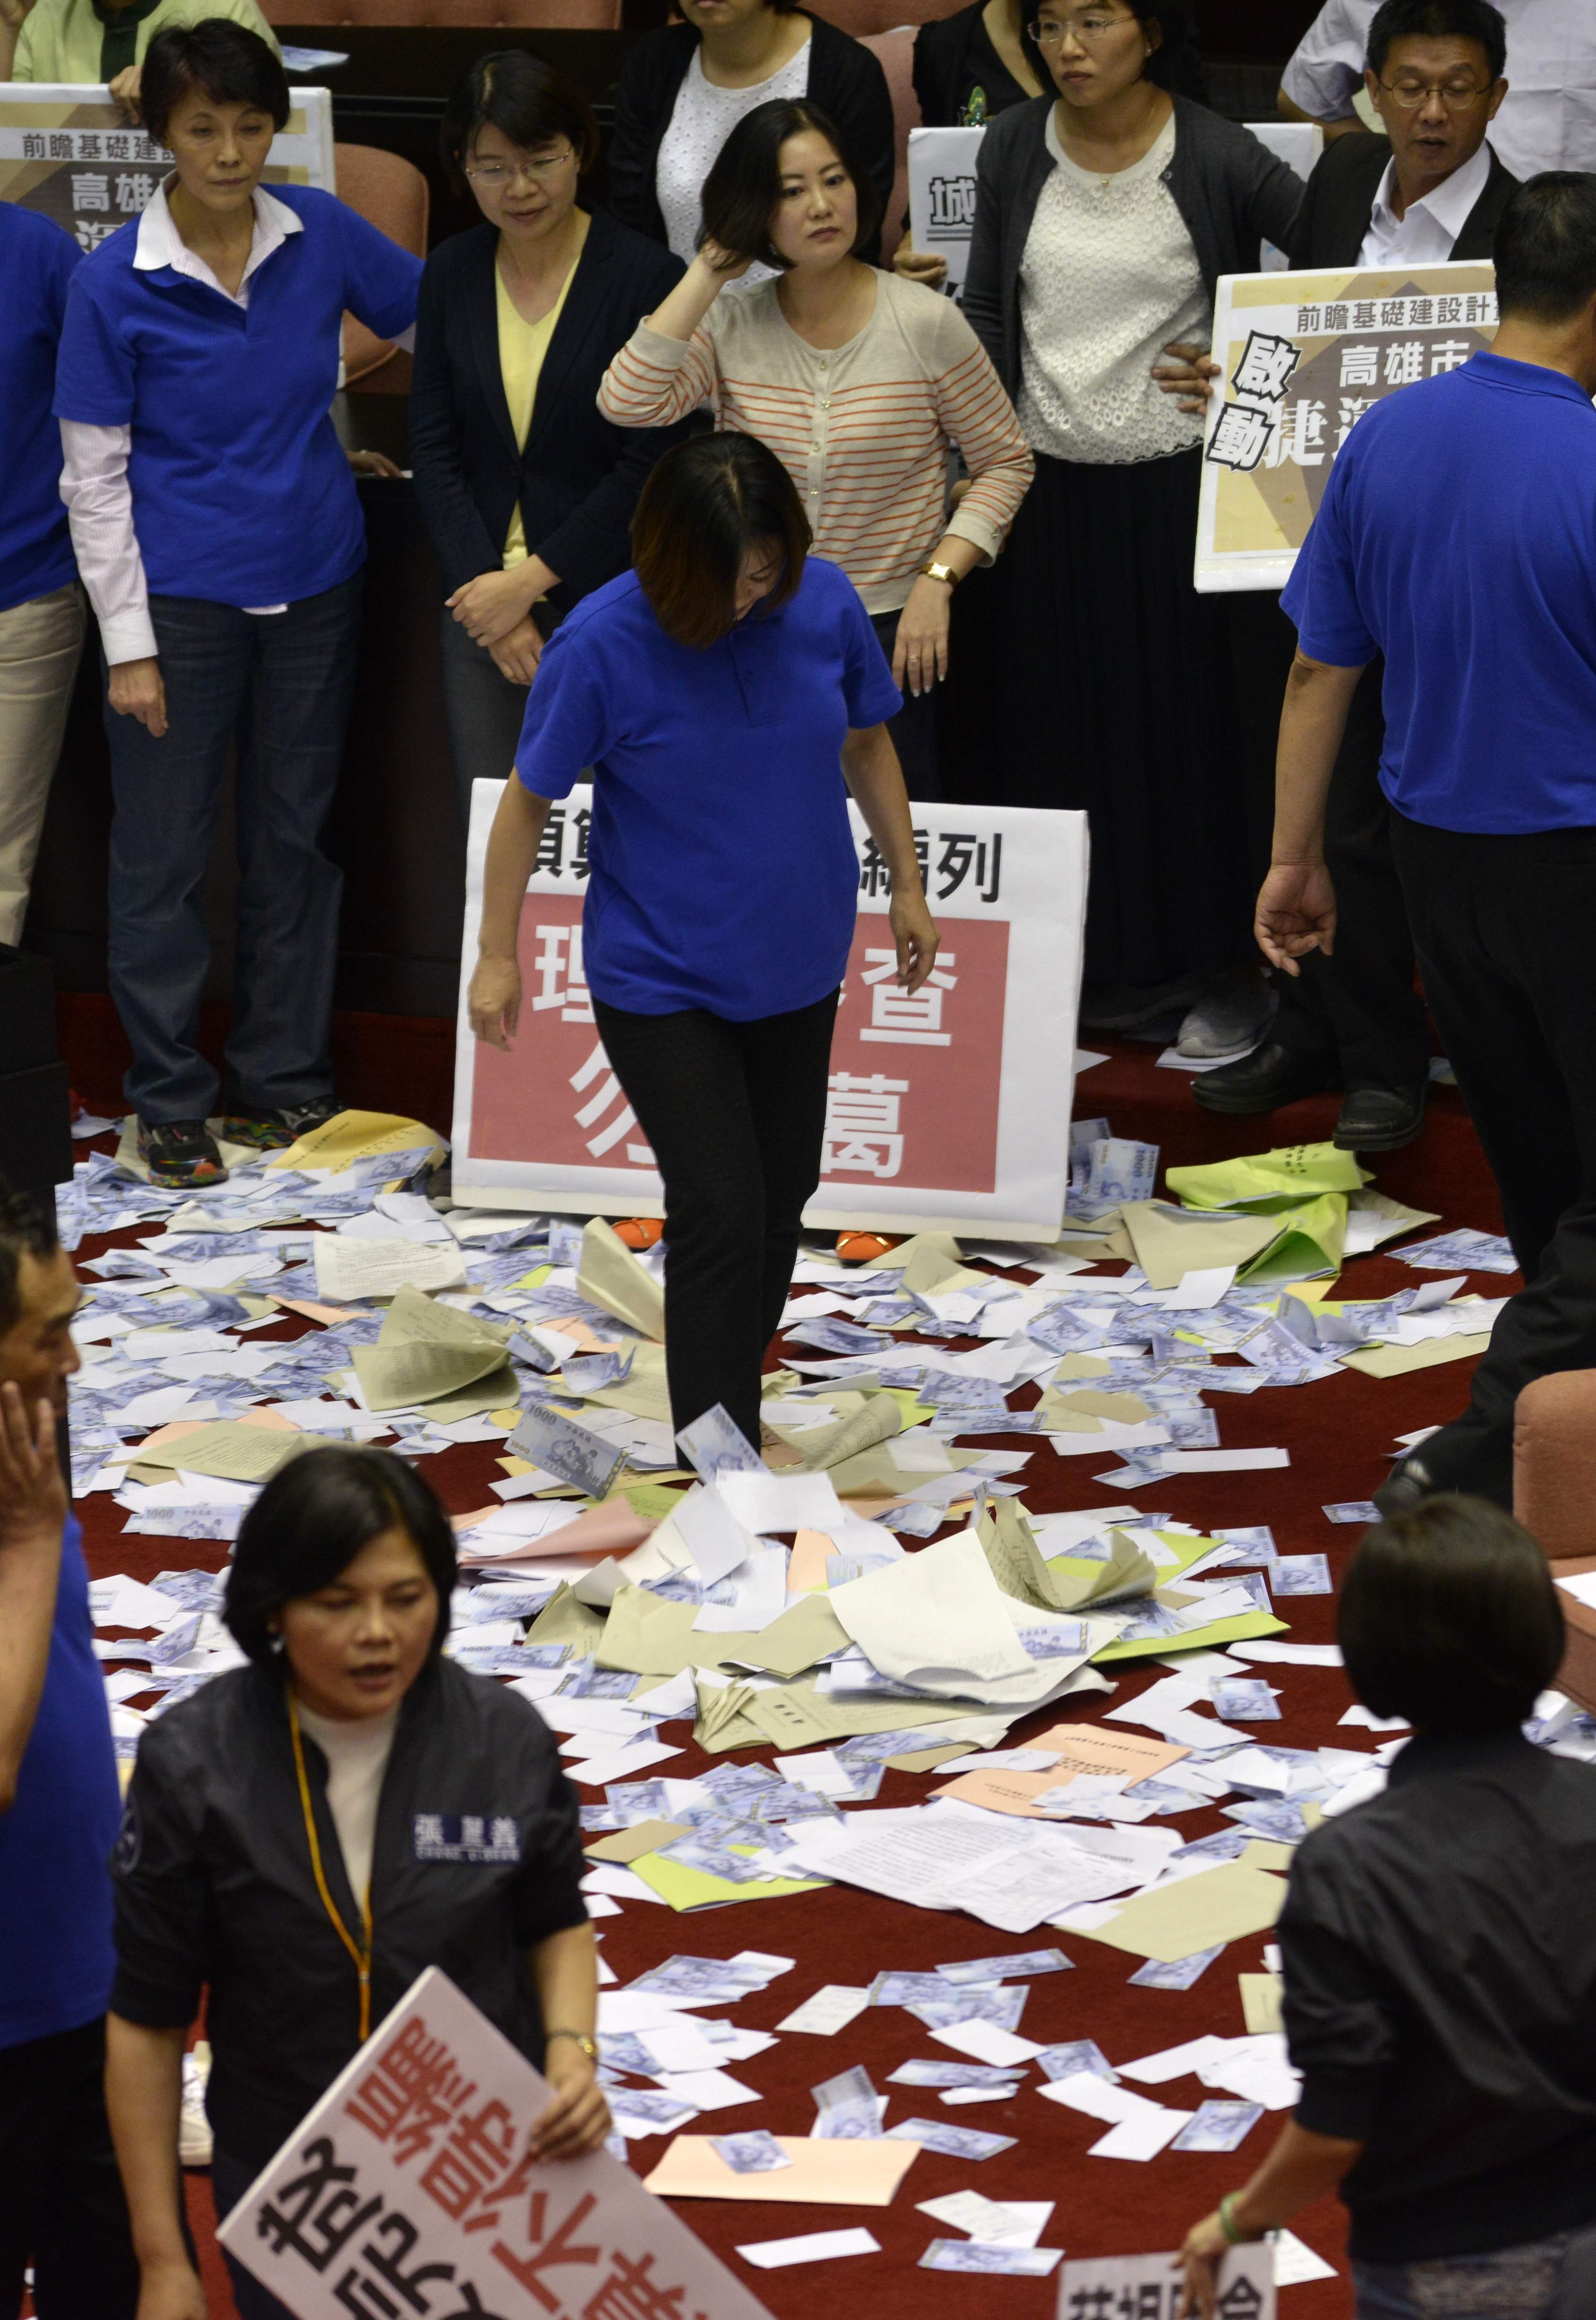 حالة من الفوضى داخل البرلمان التايوانى